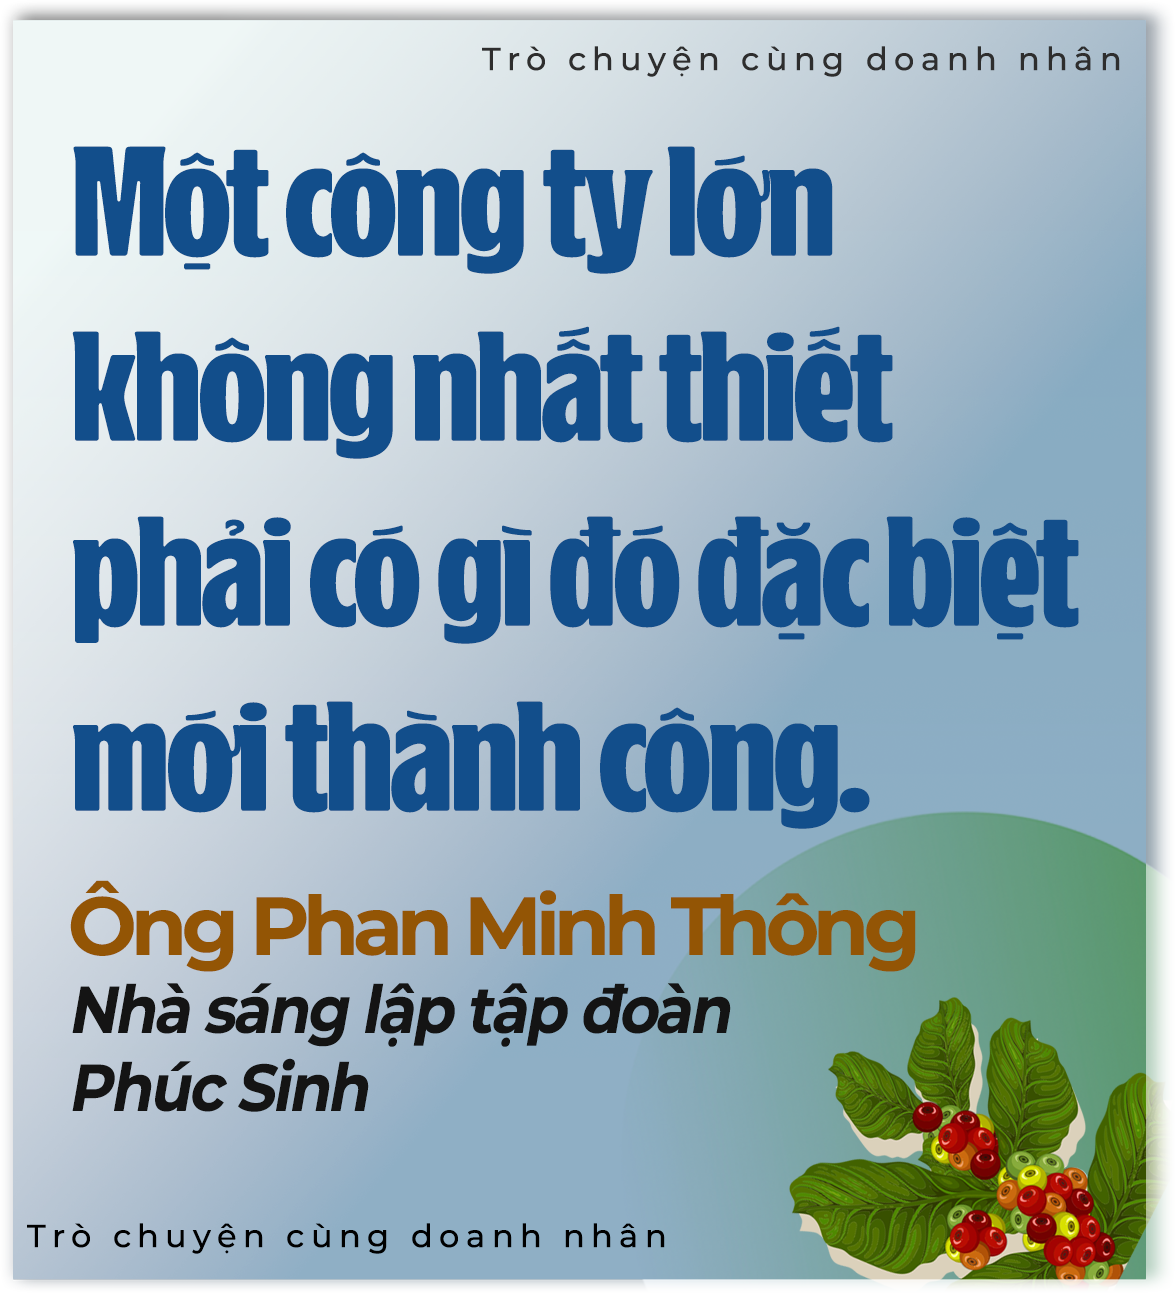 'Vua tiêu' Phan Minh Thông: Tôi nhìn thấy vàng ròng từ nông nghiệp - 9